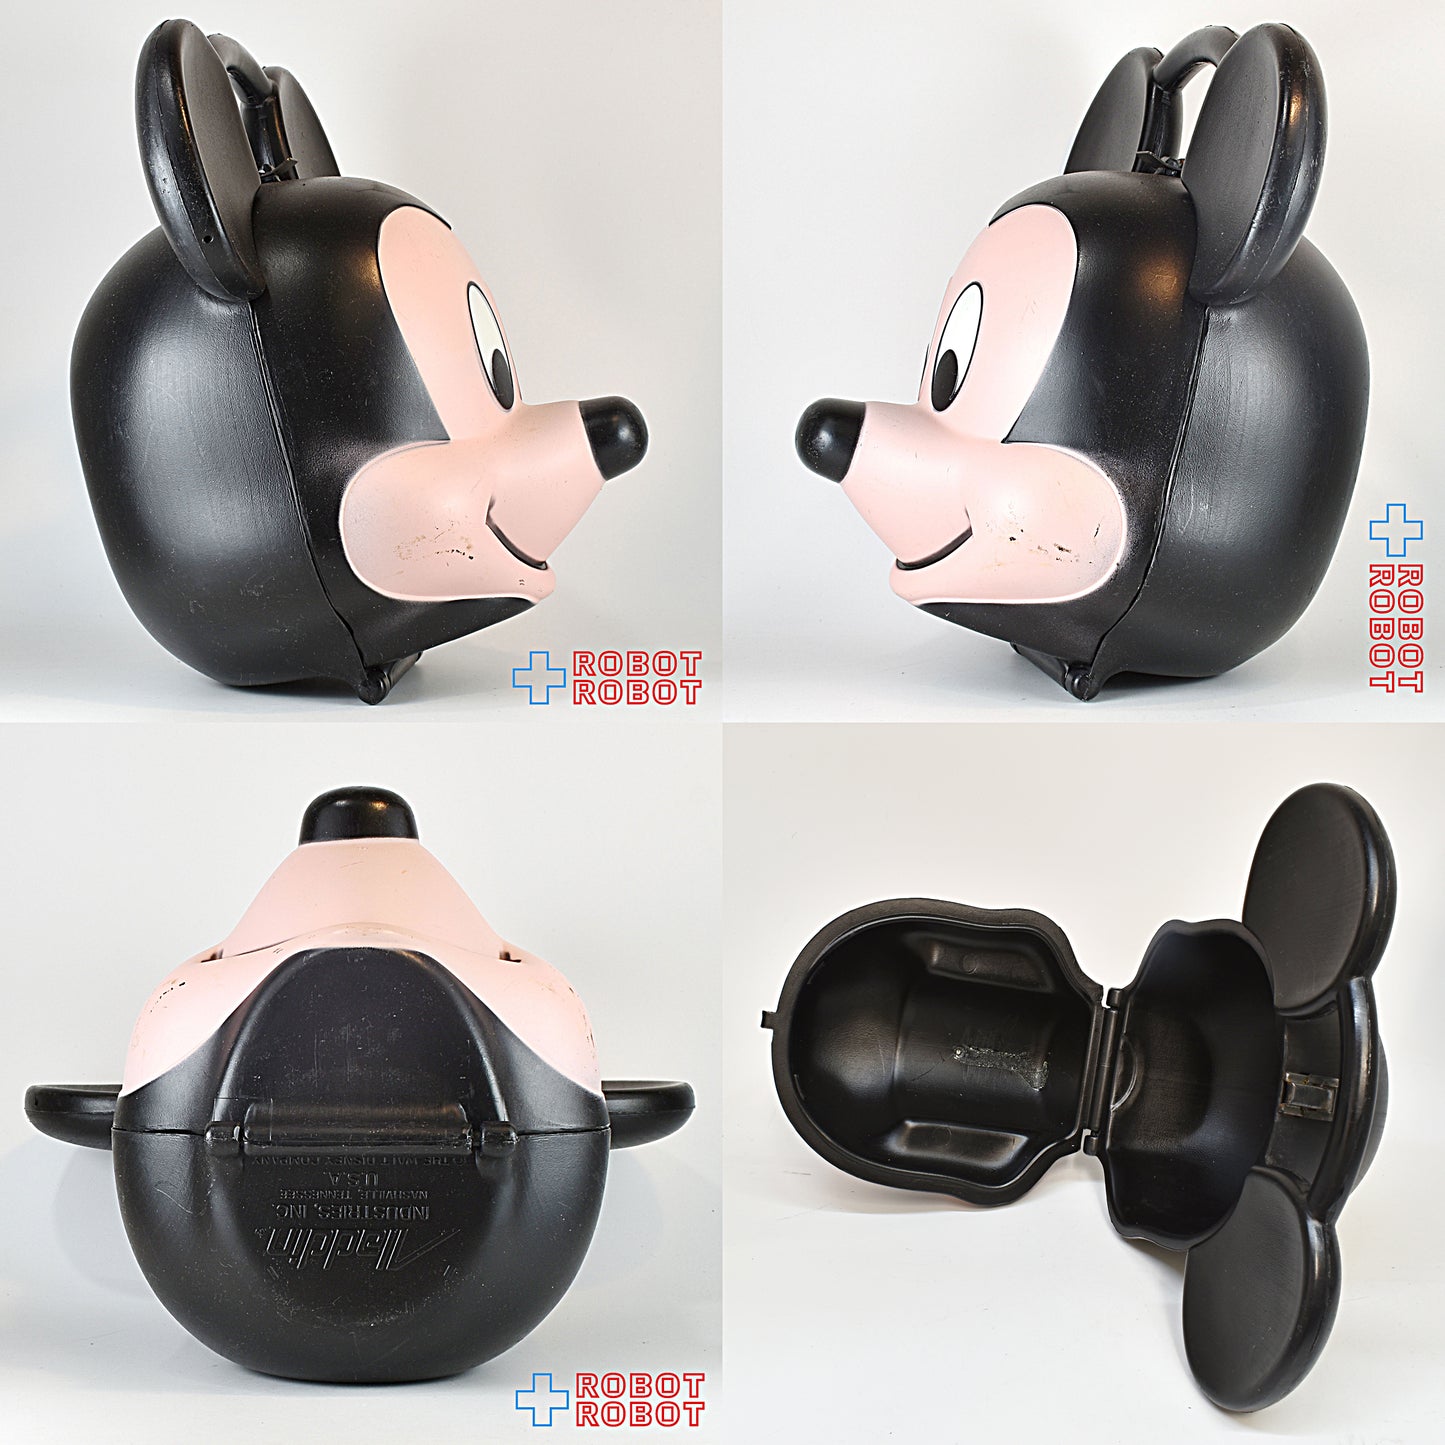 ミッキーマウスの顔のカタチのランチボックス 水筒欠ペイントロス アラジン社 1989